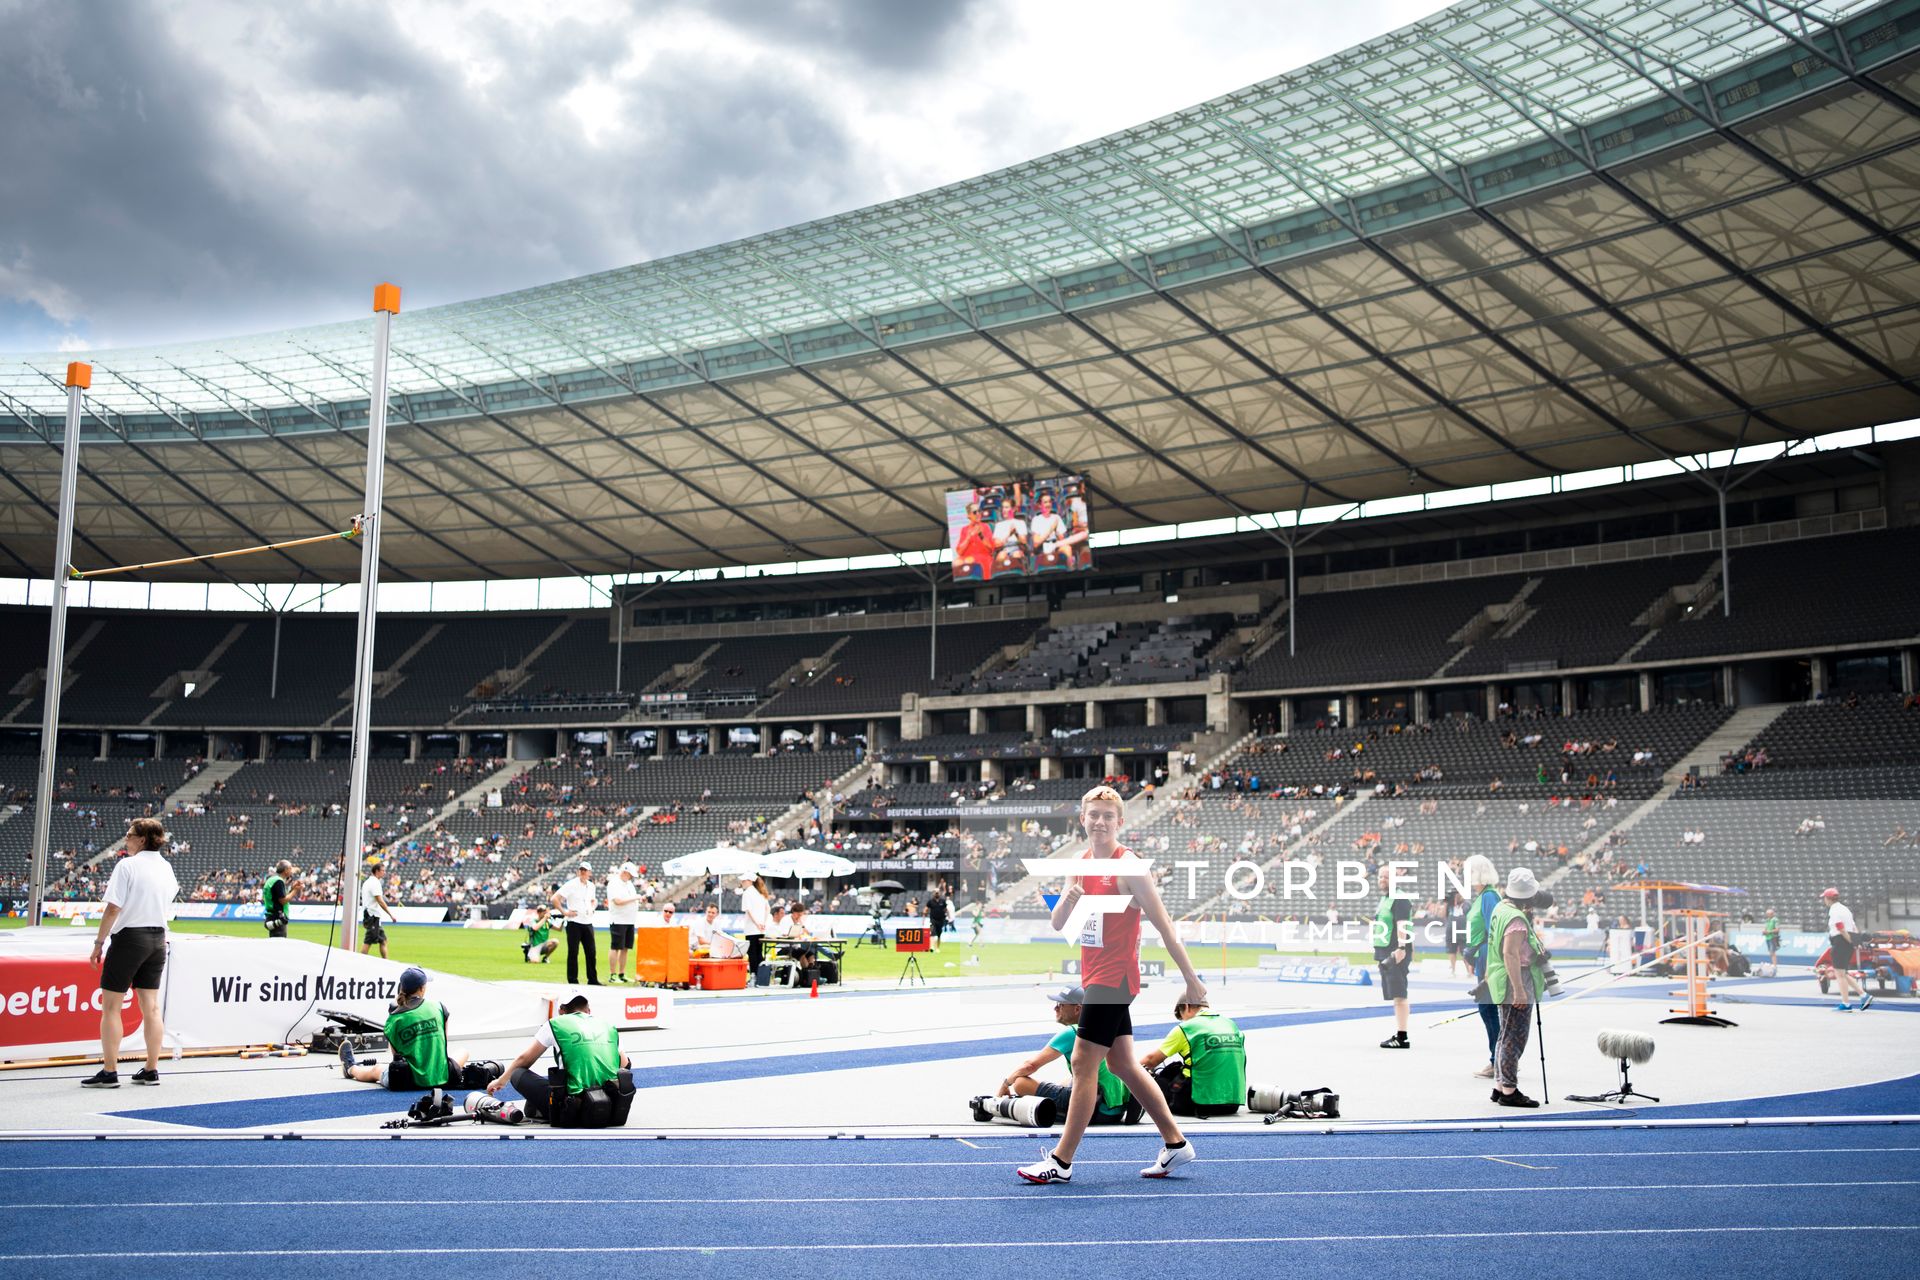 Thorben Finke (SV Sigiltra Soegel) ueber 200m waehrend der deutschen Leichtathletik-Meisterschaften im Olympiastadion am 26.06.2022 in Berlin